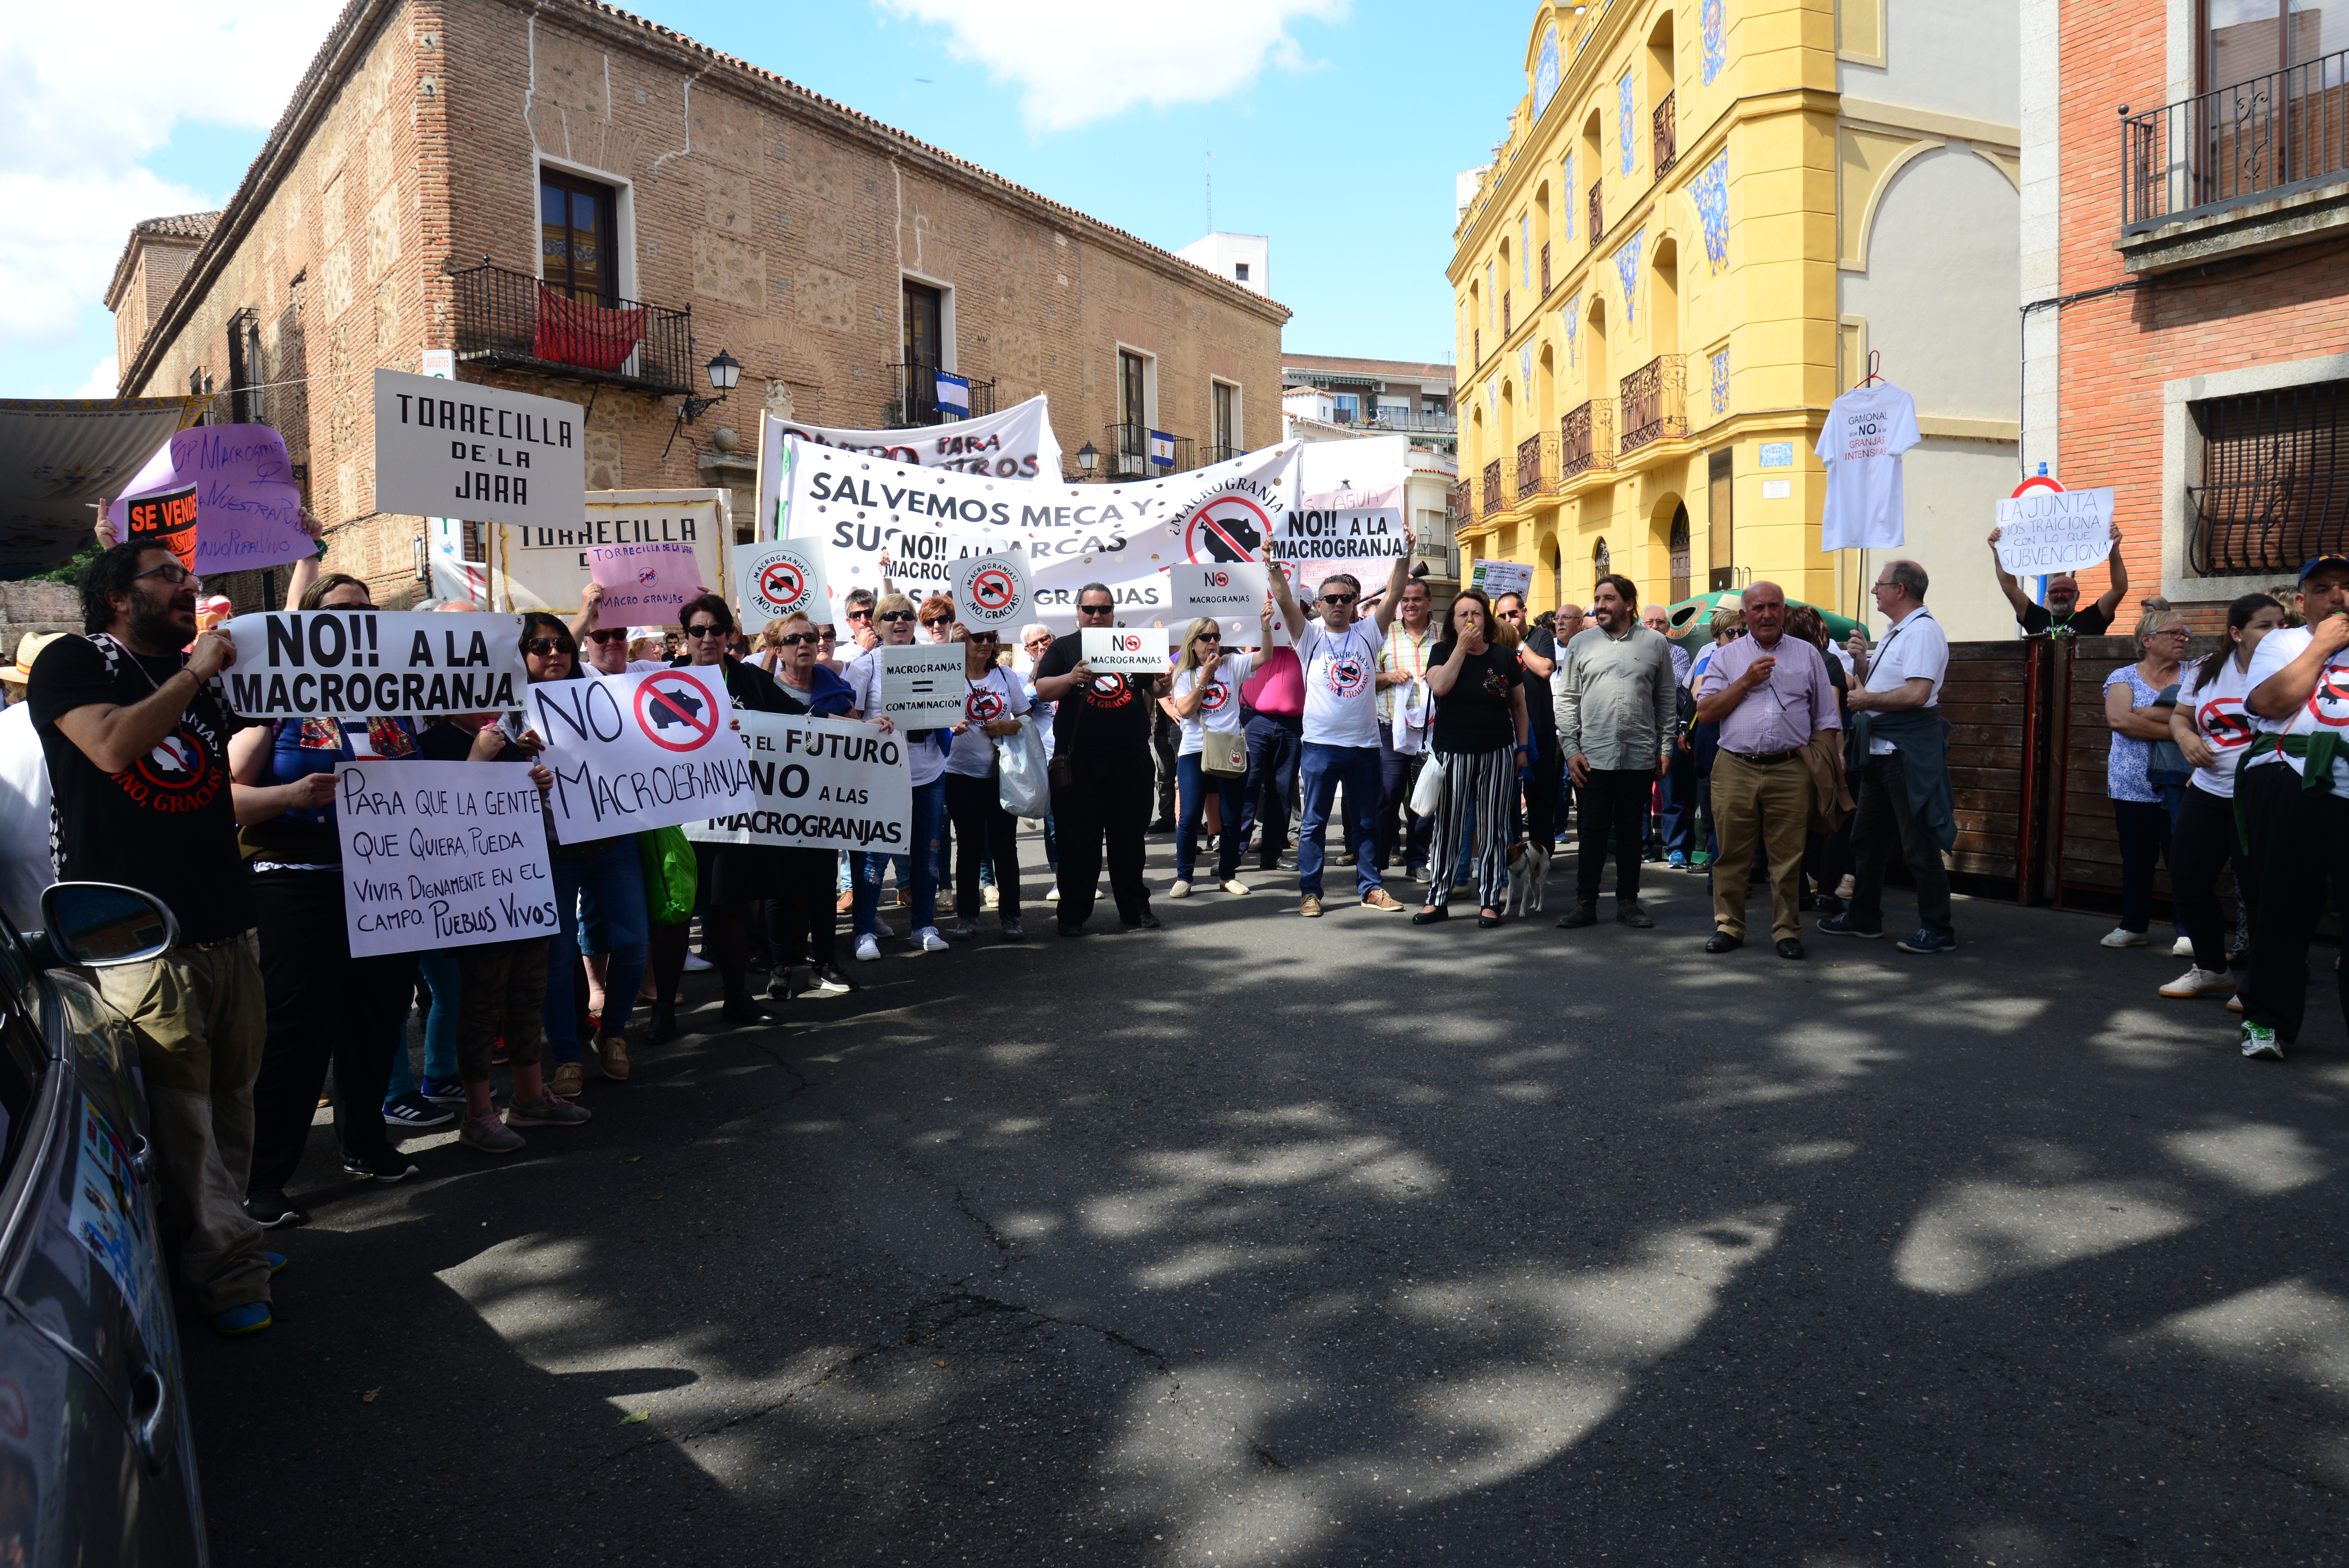 Protesta contra las macrogranjas en el Día de Castilla-la Mancha